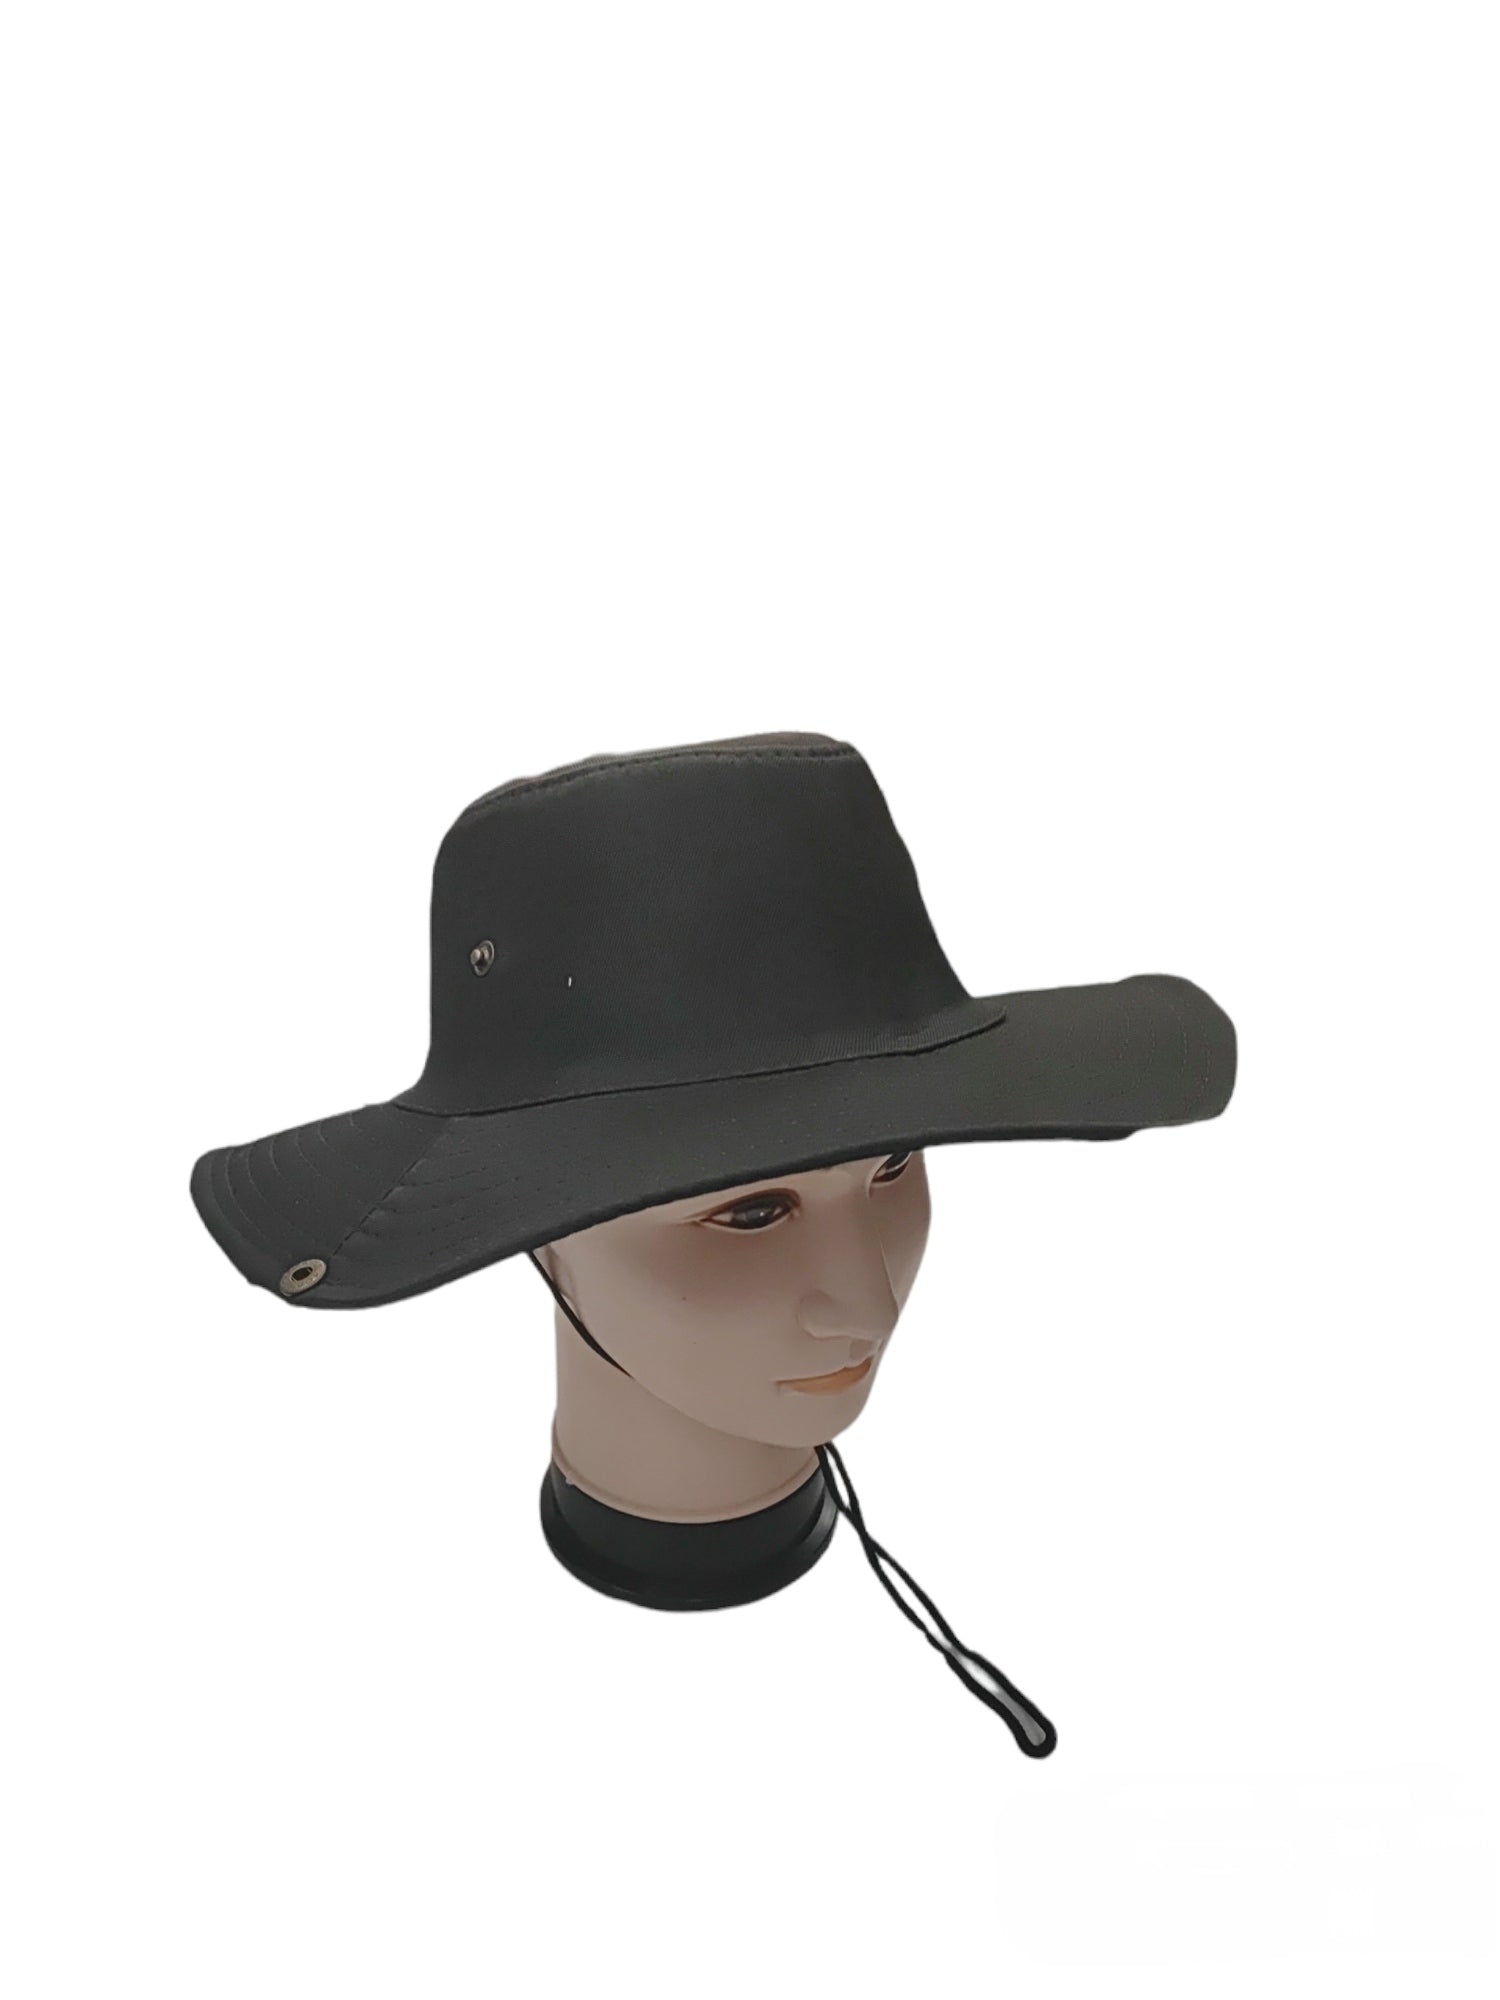 Chapeaux  cowboy uni  (x6)